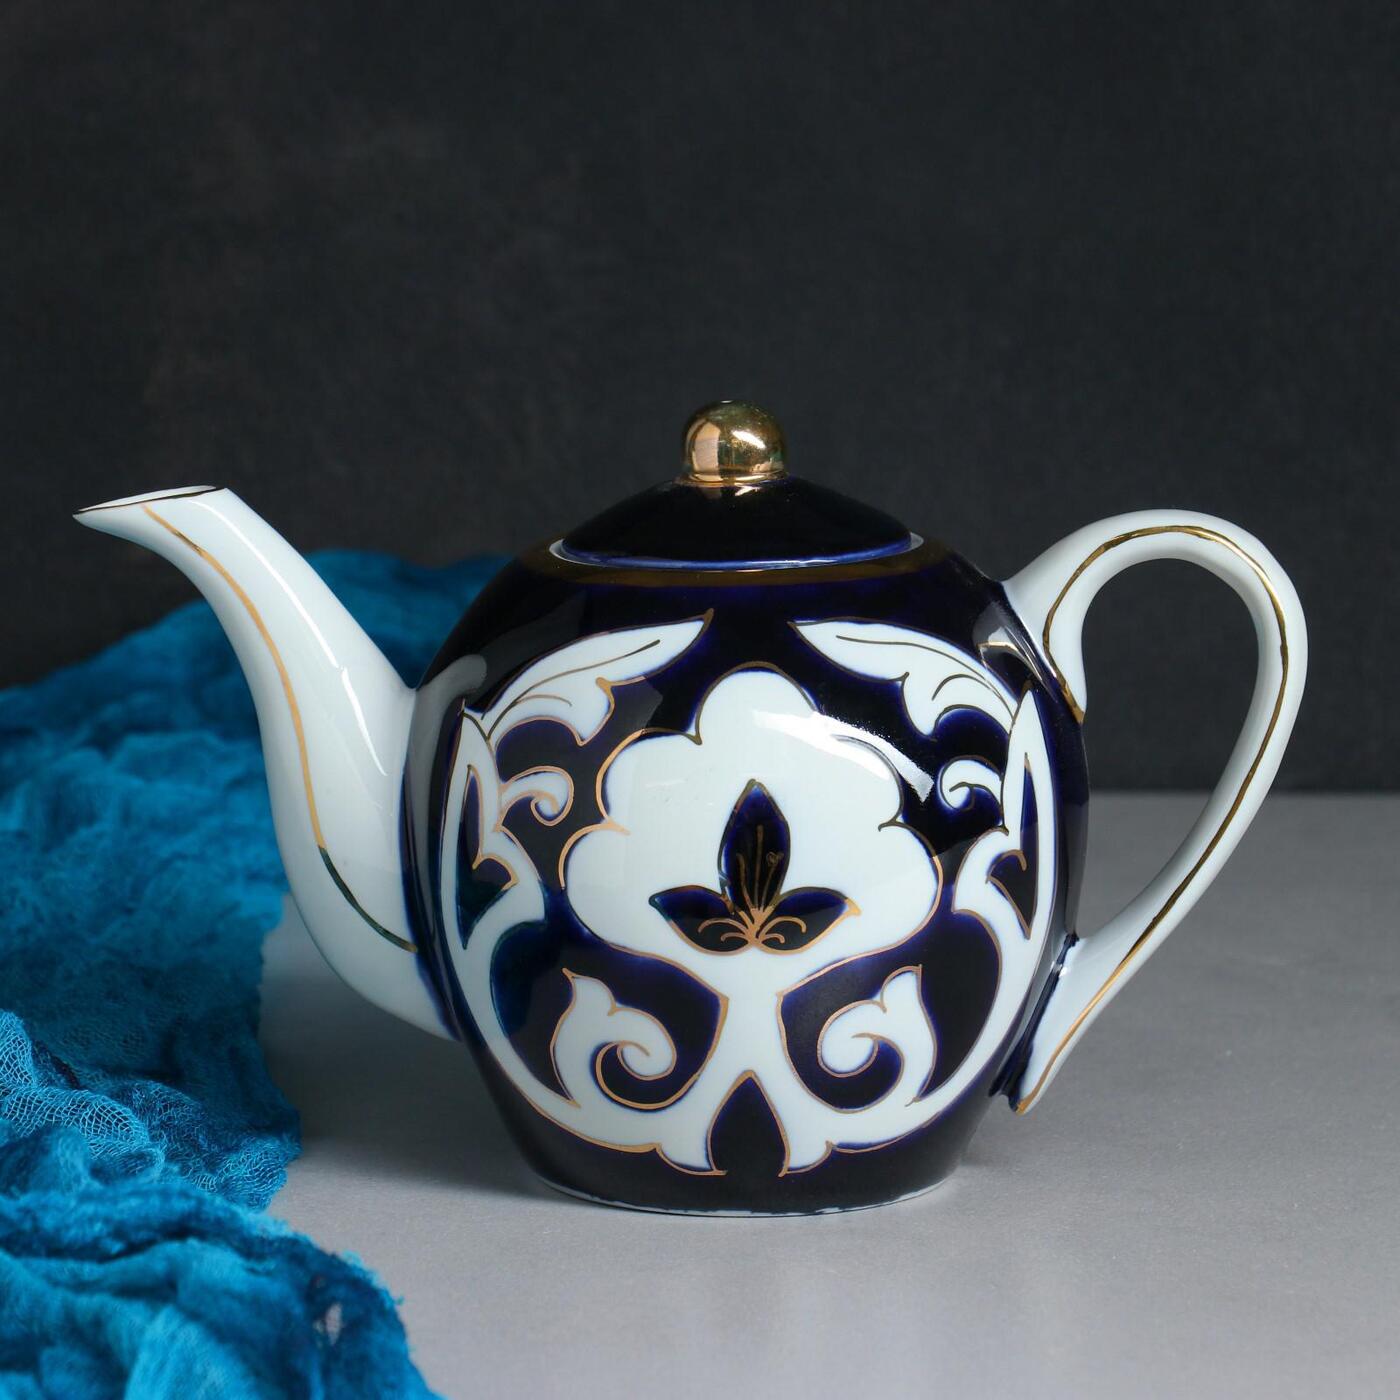 Узбекский чайник. Чайник "пахта. Слоник", 0.8 л. Turon Porcelain чайник. Узбекская посуда пахта. Чайник заварочный пахта 0.8.